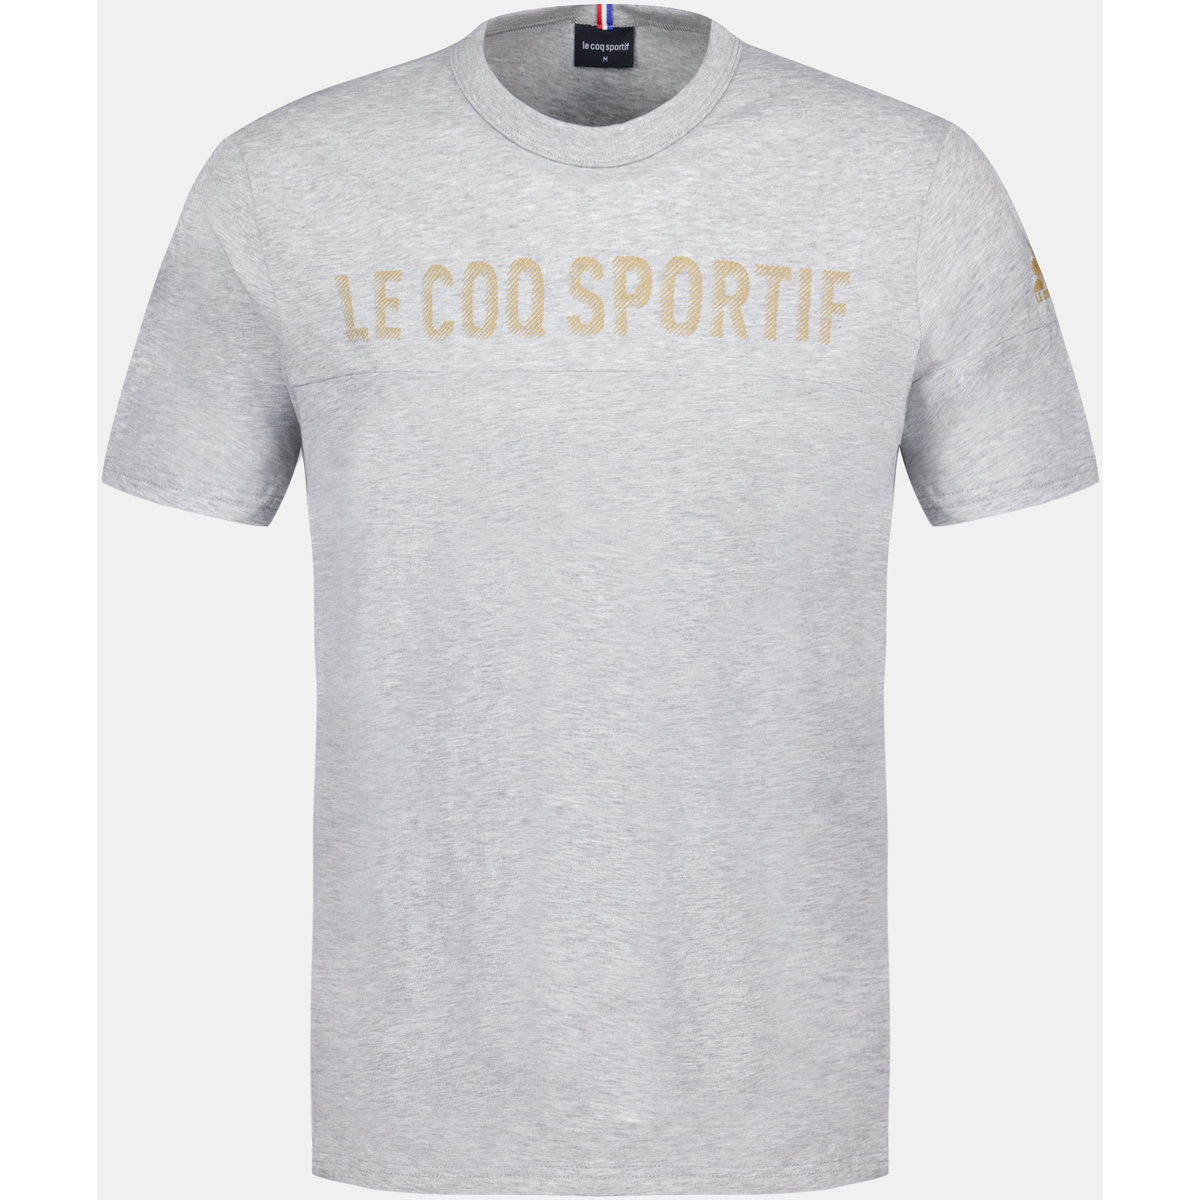 Le Coq Sportif Gris T-shirt Homme Q0Szc01M